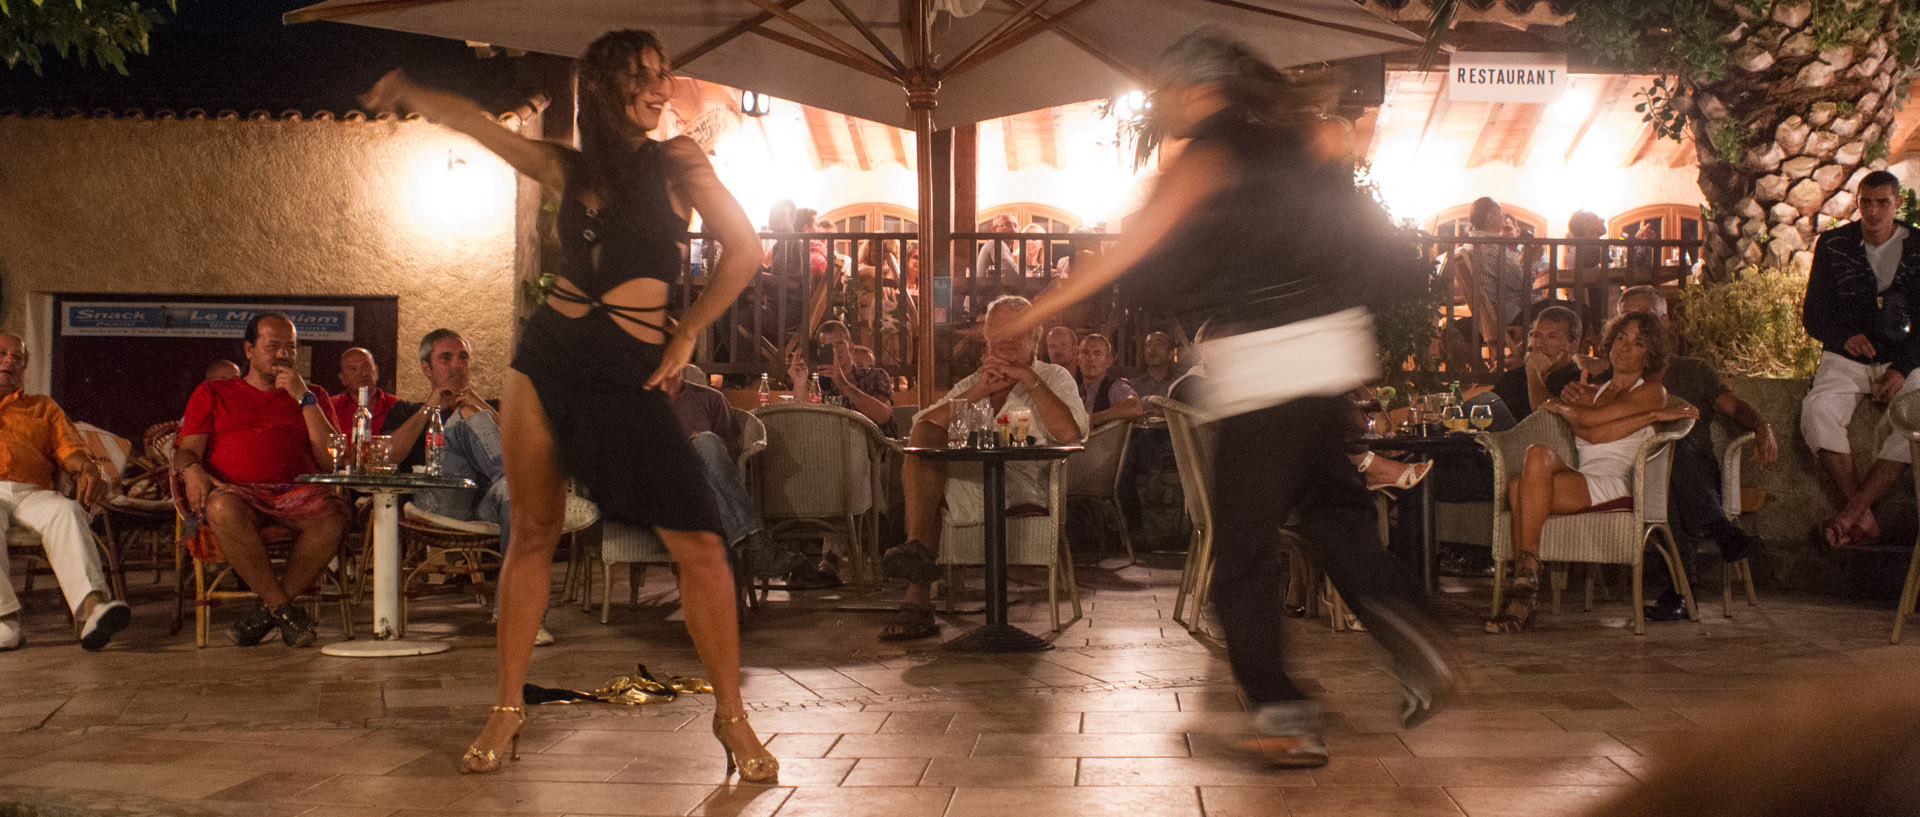 Démonstration de salsa par Nicola et Luiza, à la terrasse du Minimum, île du Levant.